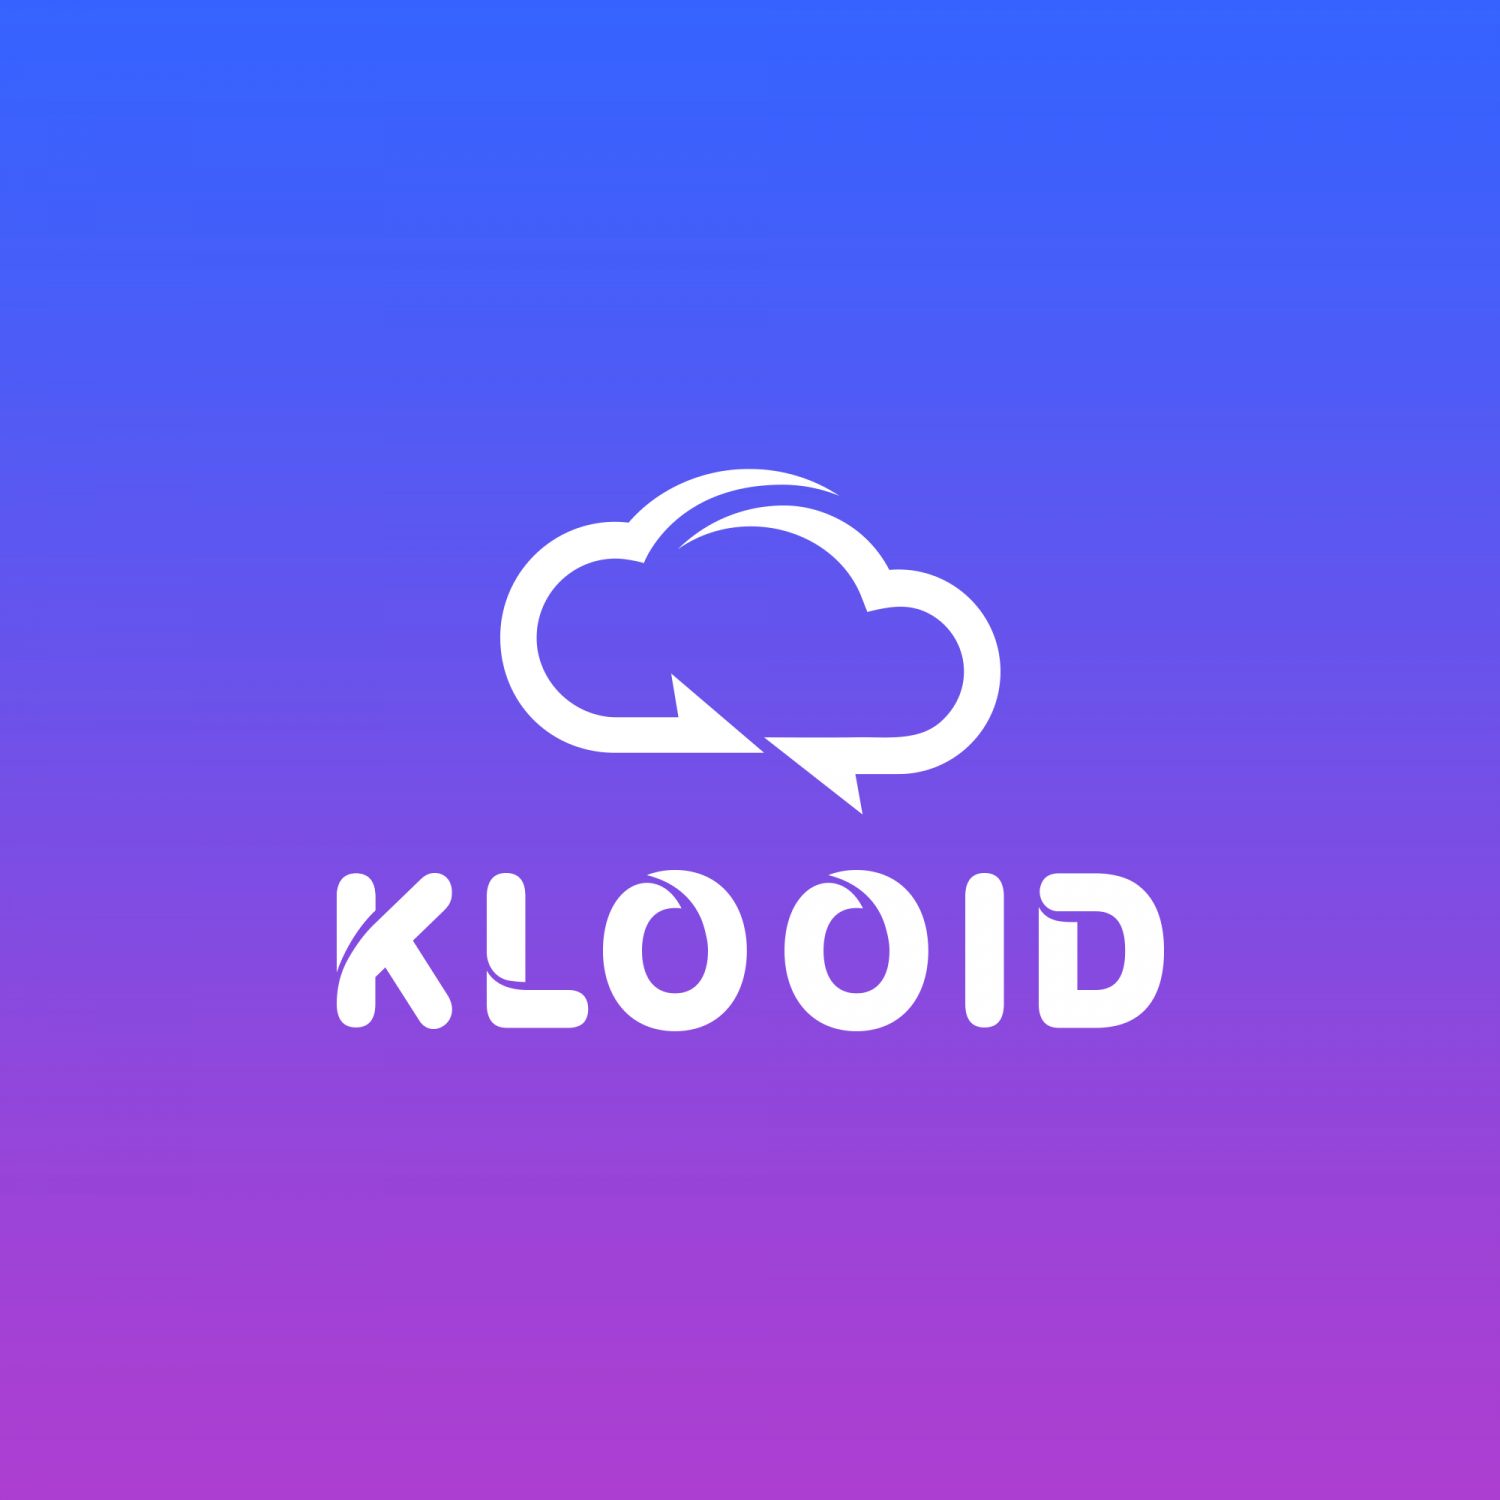 Klooid